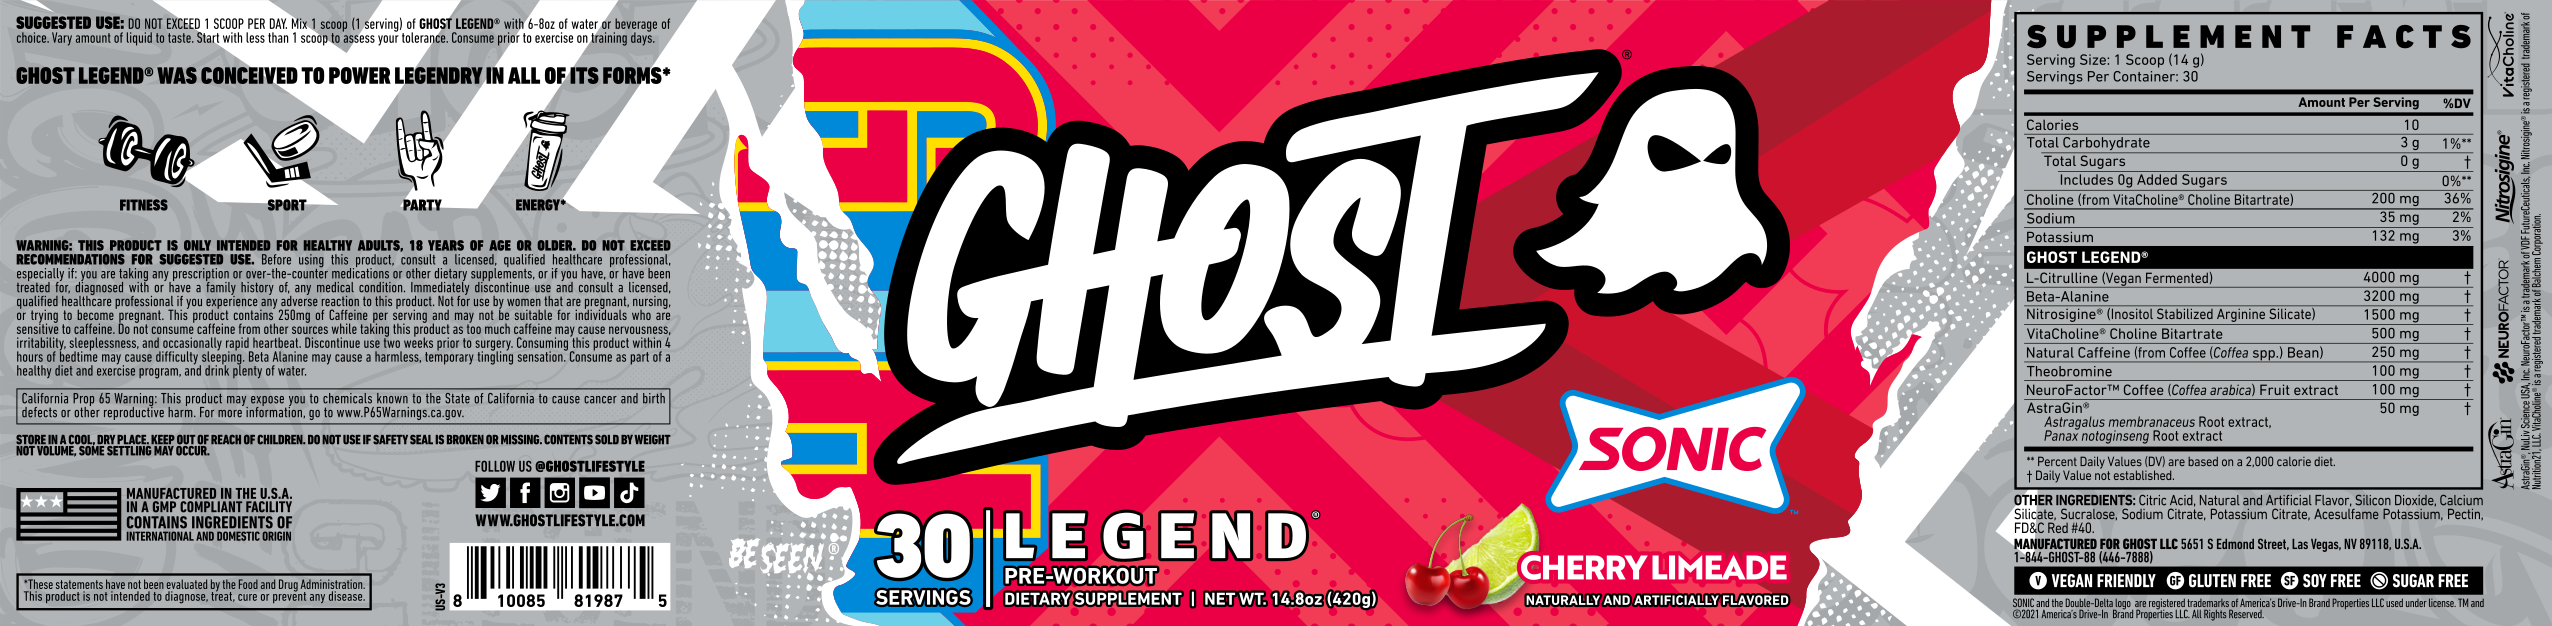 Ghost Legend V3 Full Label